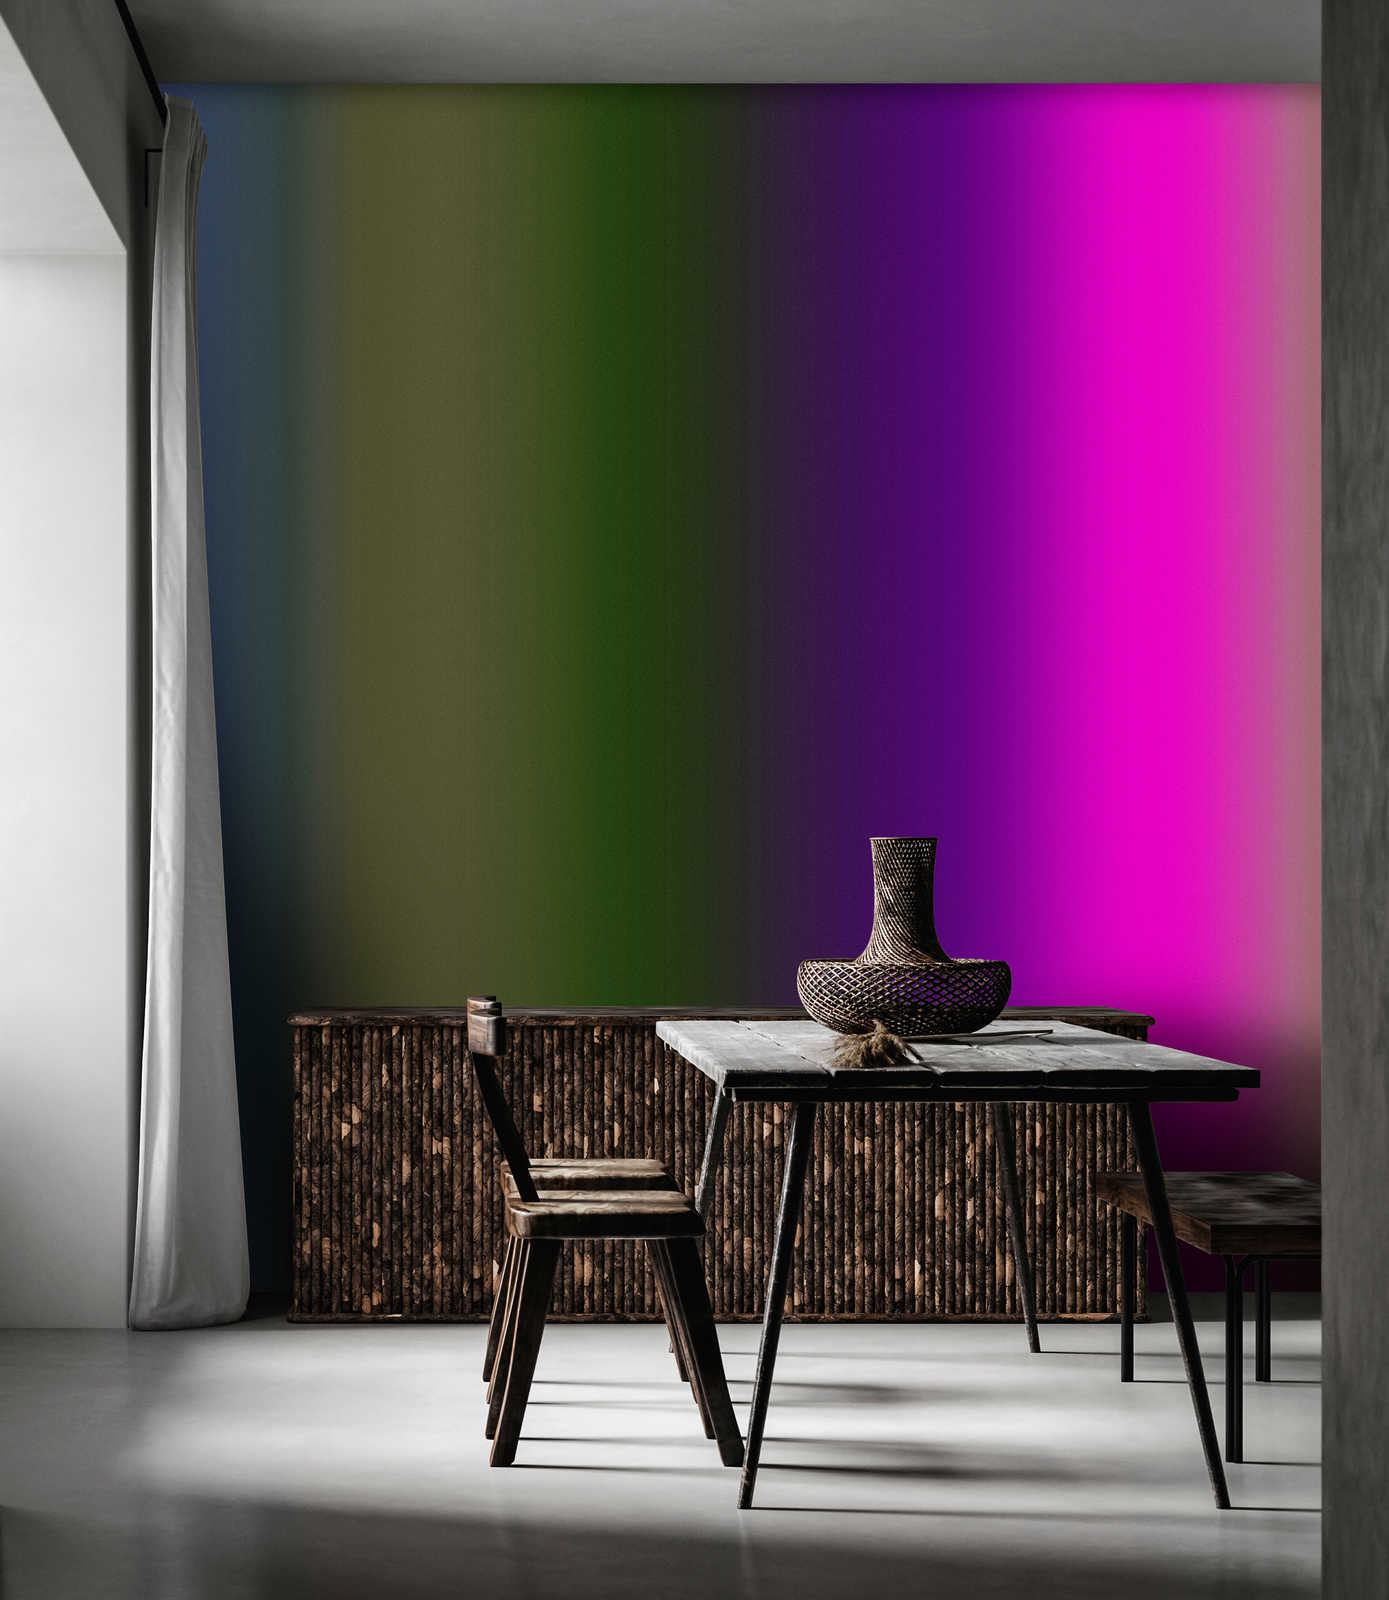             Over the Rainbow 3 – Fototapete buntes Farbspektrum mit Neon-Pink
        